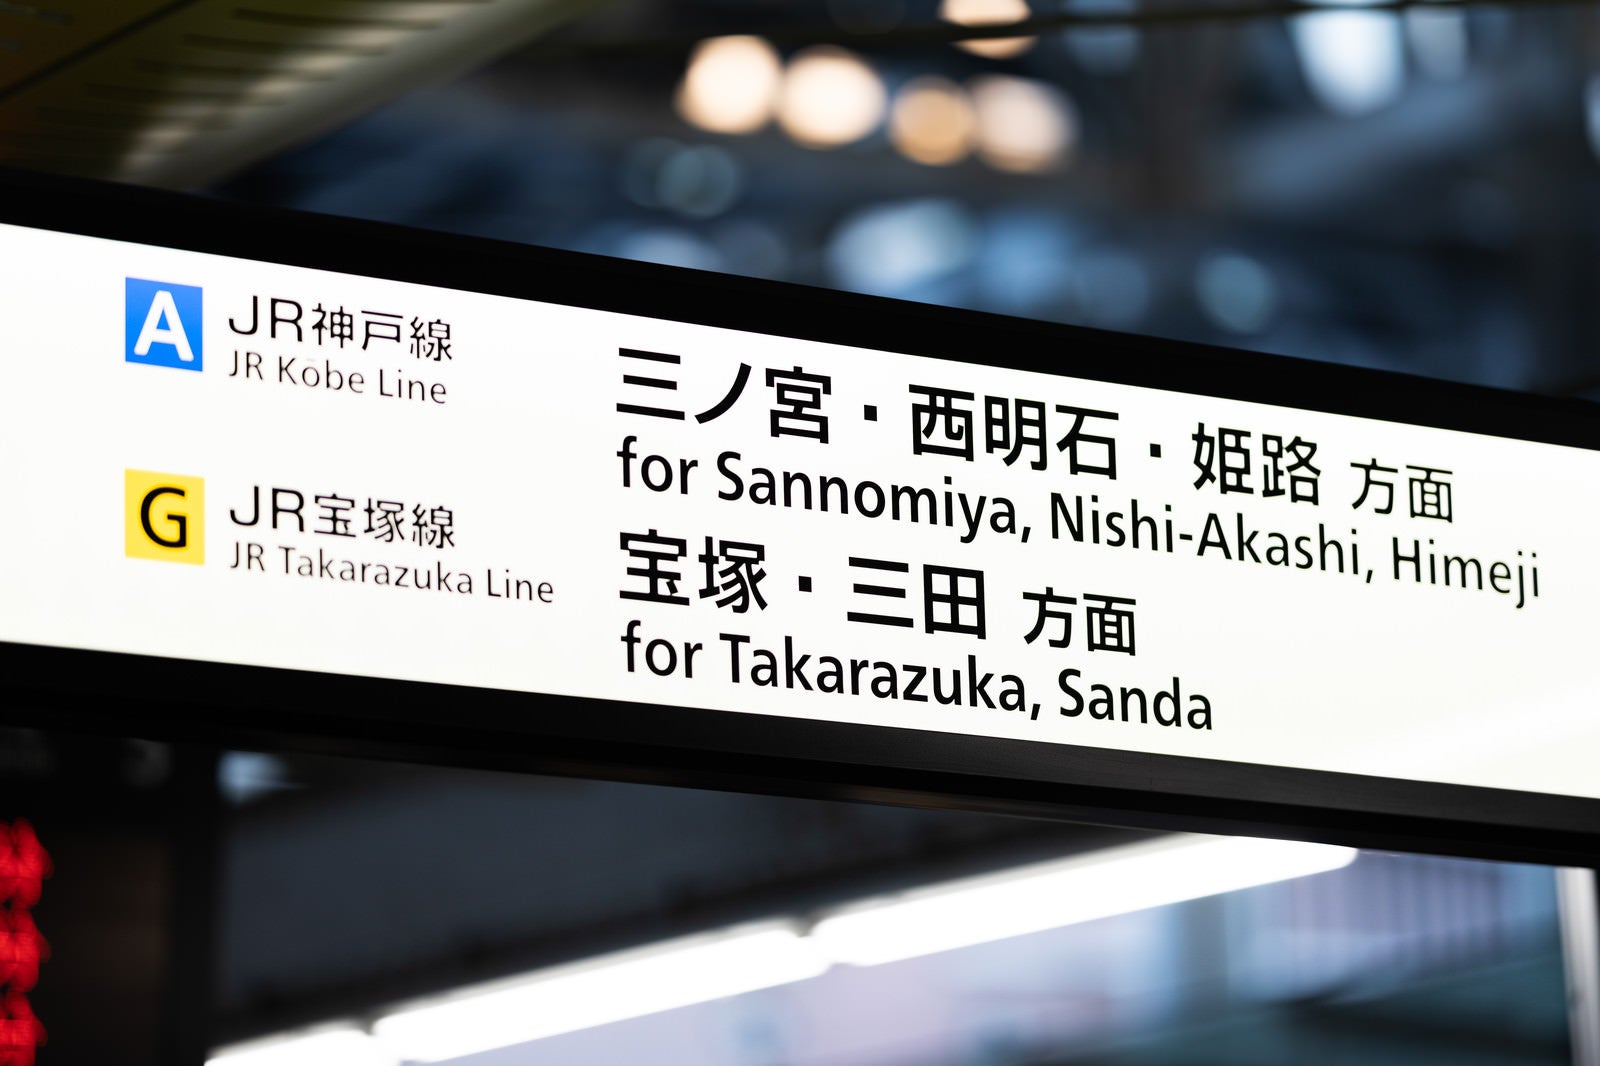 「大阪JR神戸線と宝塚線の案内板」の写真